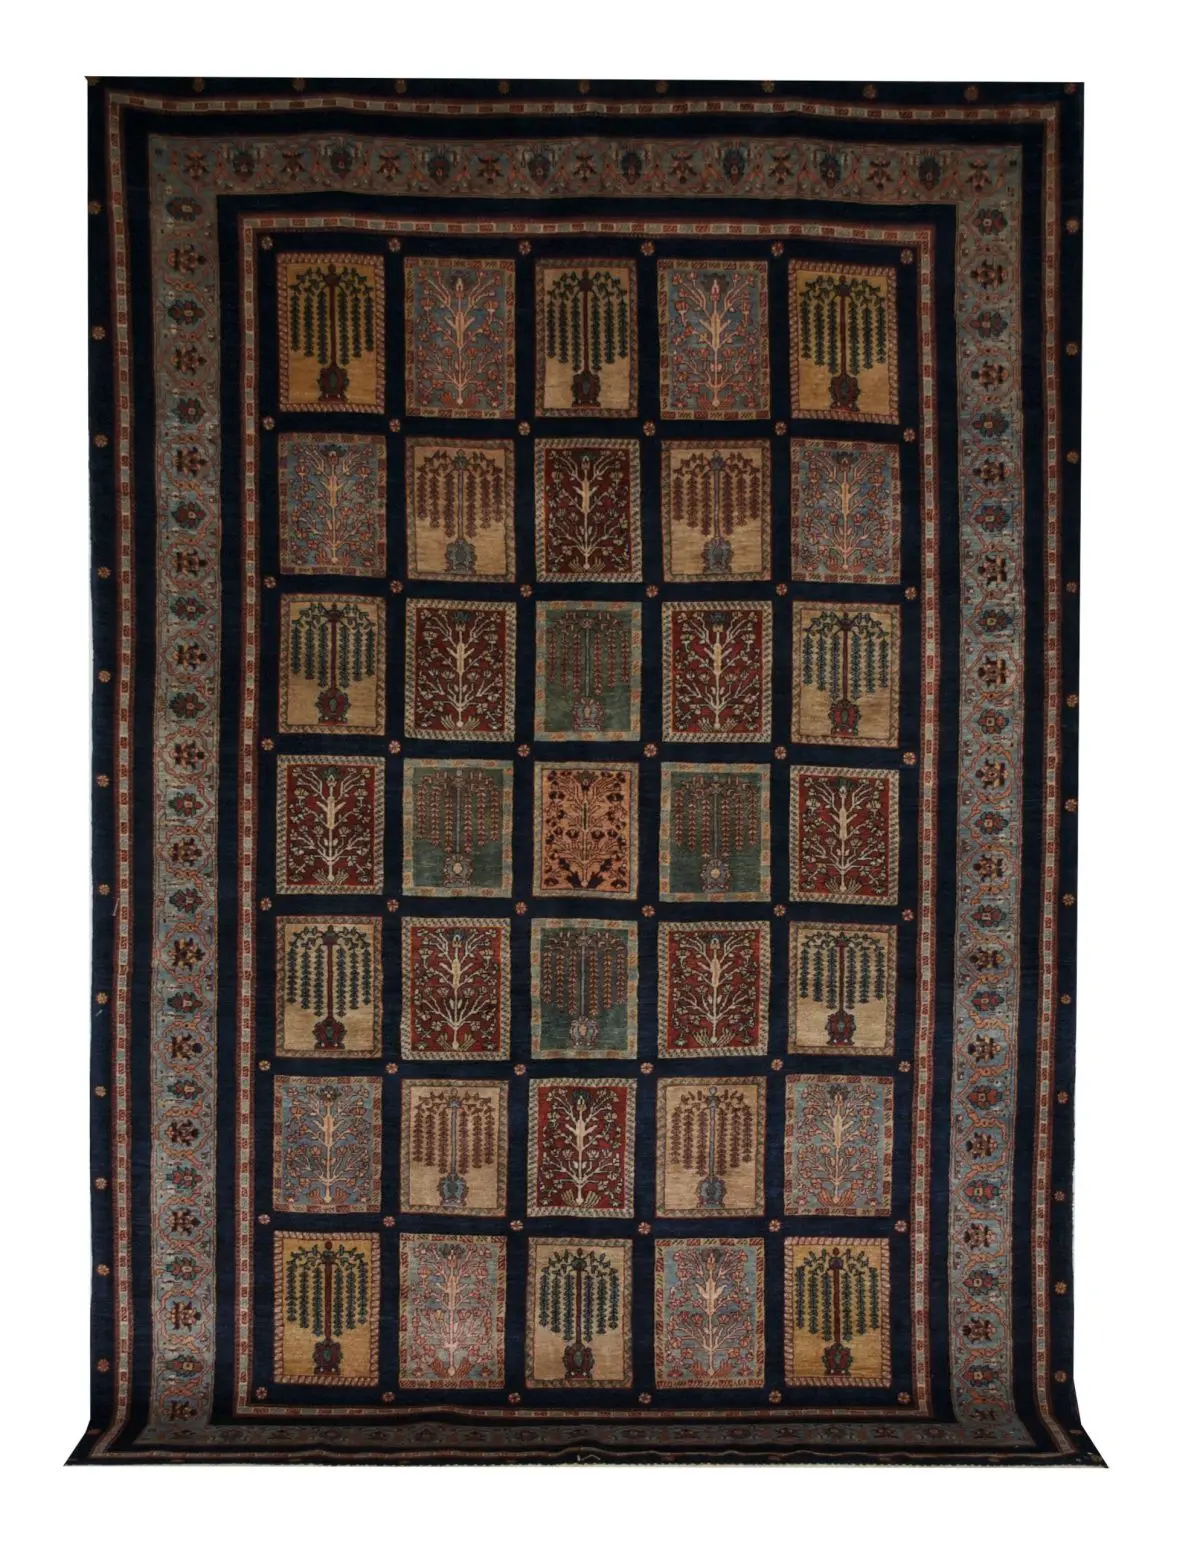 Persian Gabbeh 7' 3" x 10' 8" Wool Handmade Area Rug - Shabahang Royal Carpet